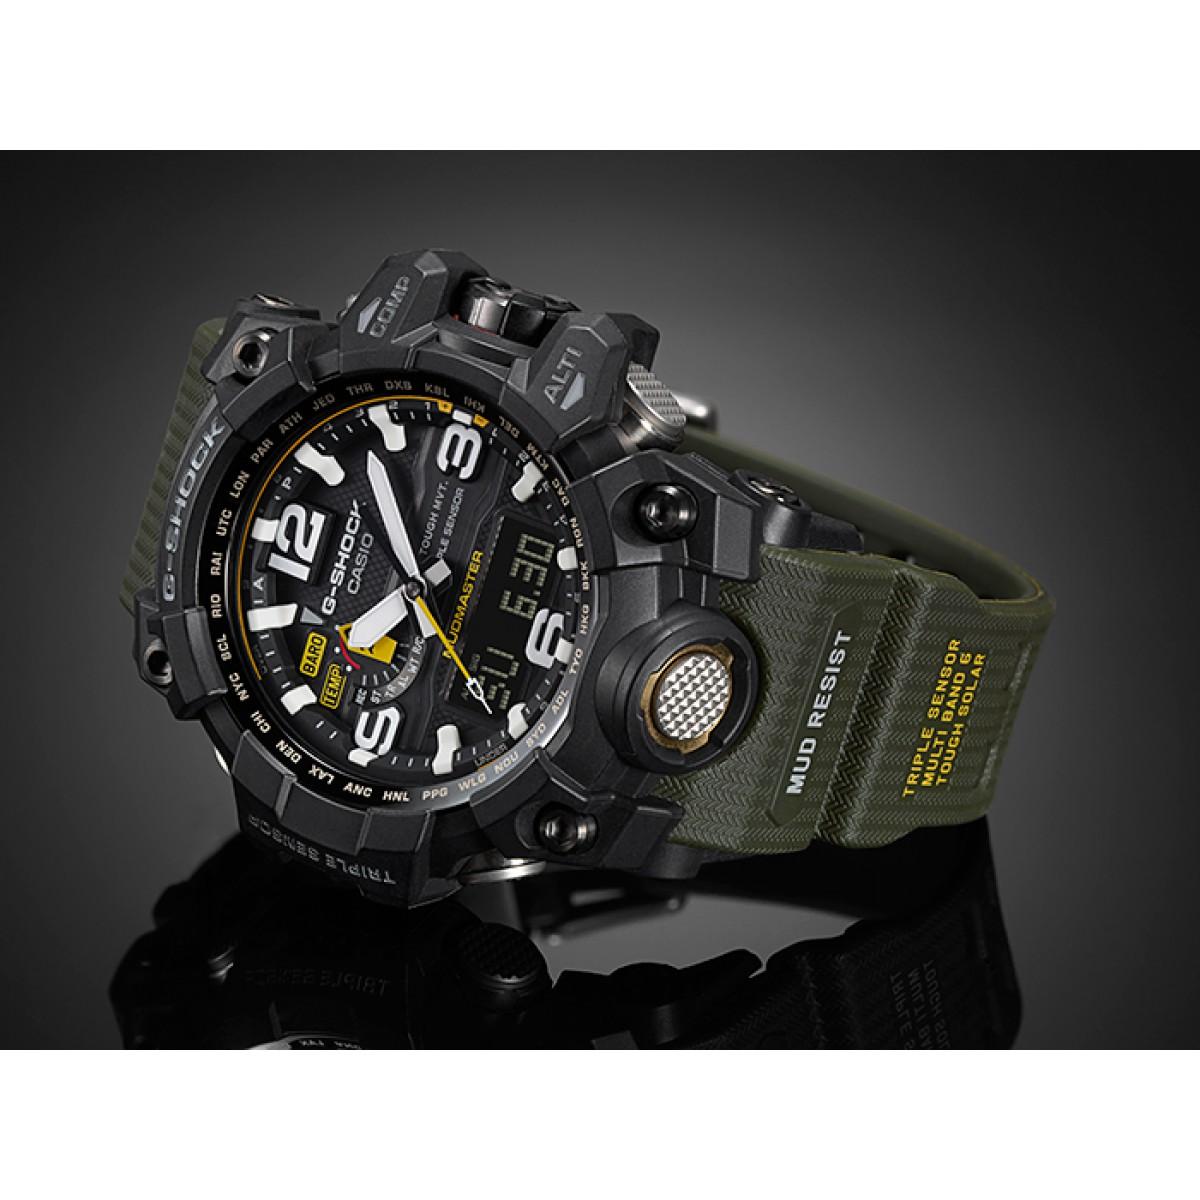 นาฬิกา CASIO G-Shock GG-1000-1A3DR (ประกัน cmg)